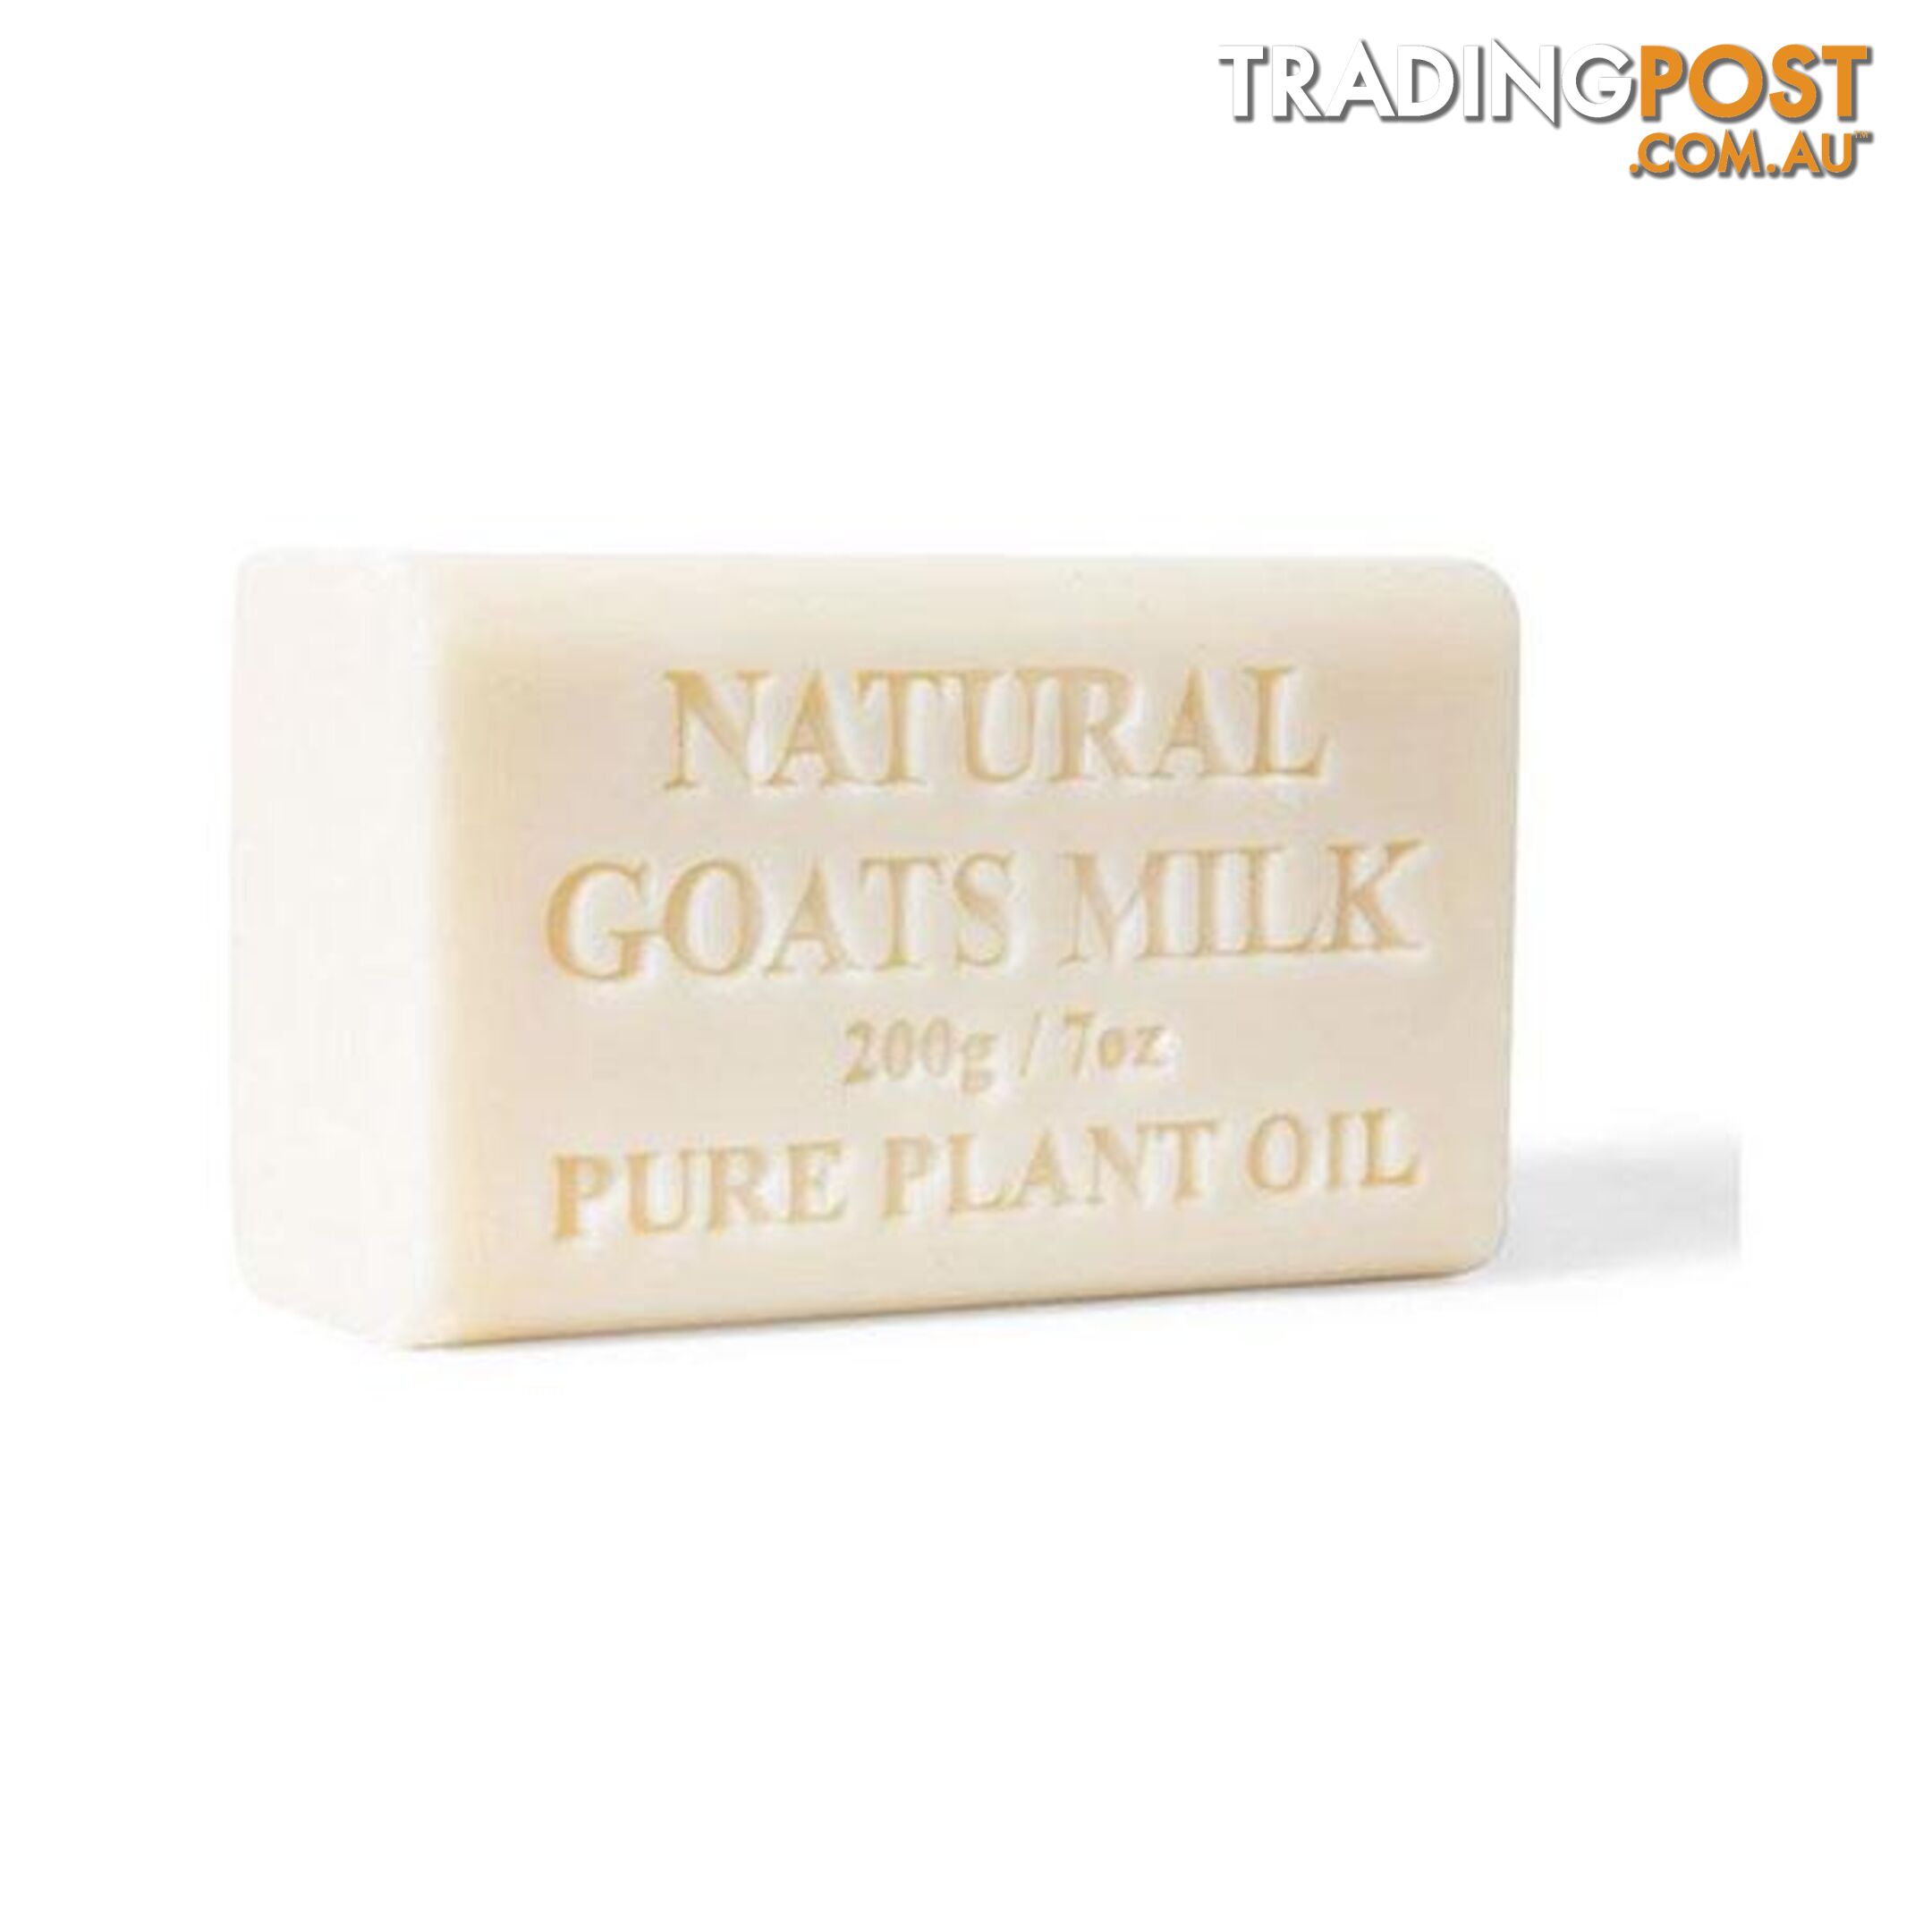 10x 200g Goats Milk Soap Natural Creamy Scent Skin Care Pure - Orku - 787976616991